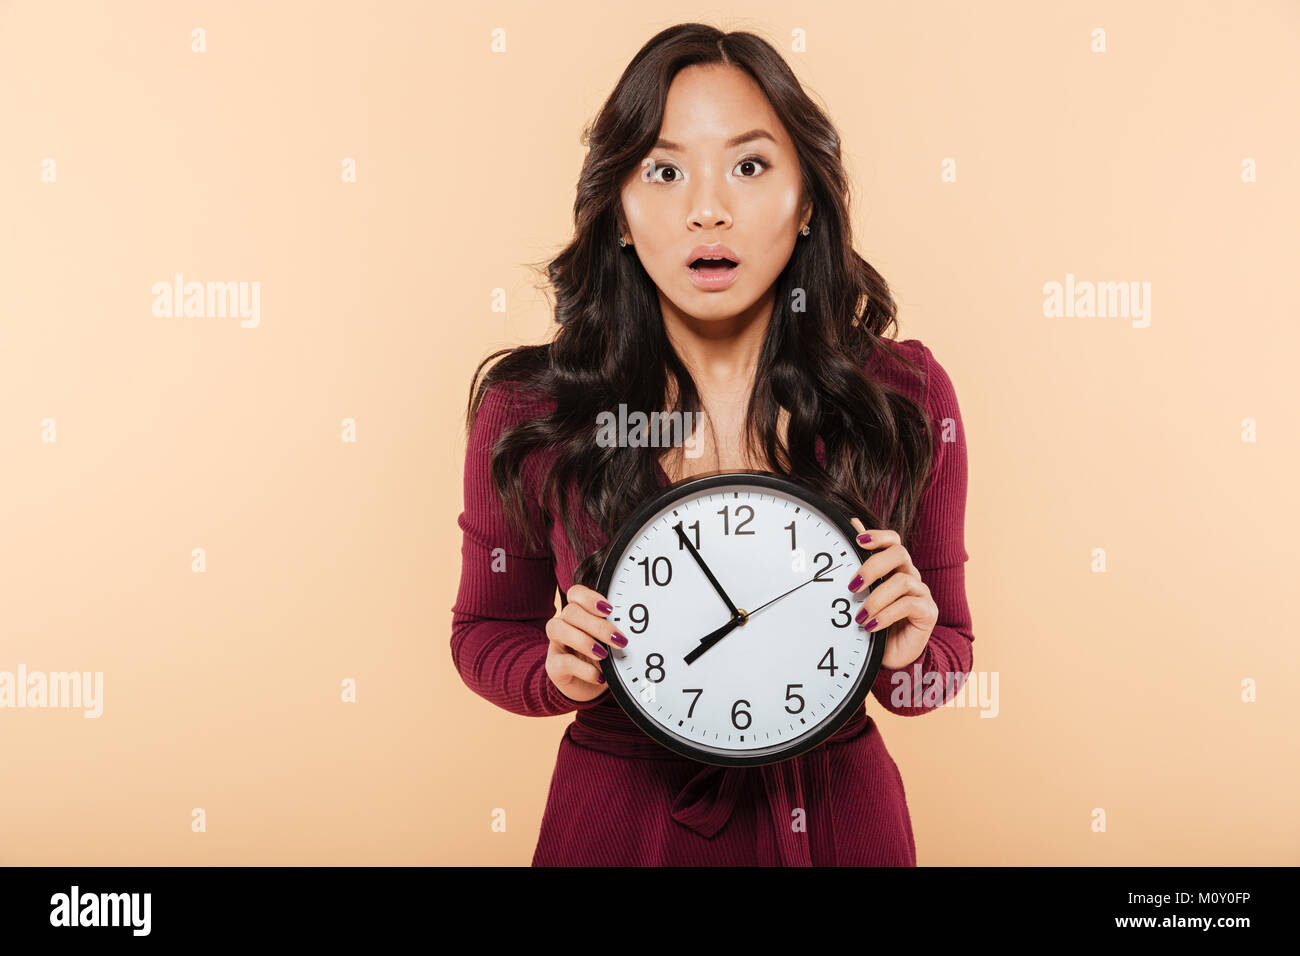 Junge asiatische Frau mit dem lockigen langen Haare, die Uhr zeigt fast 8, Ende, oder Fehlt etwas über Pfirsich Hintergrund Stockfoto